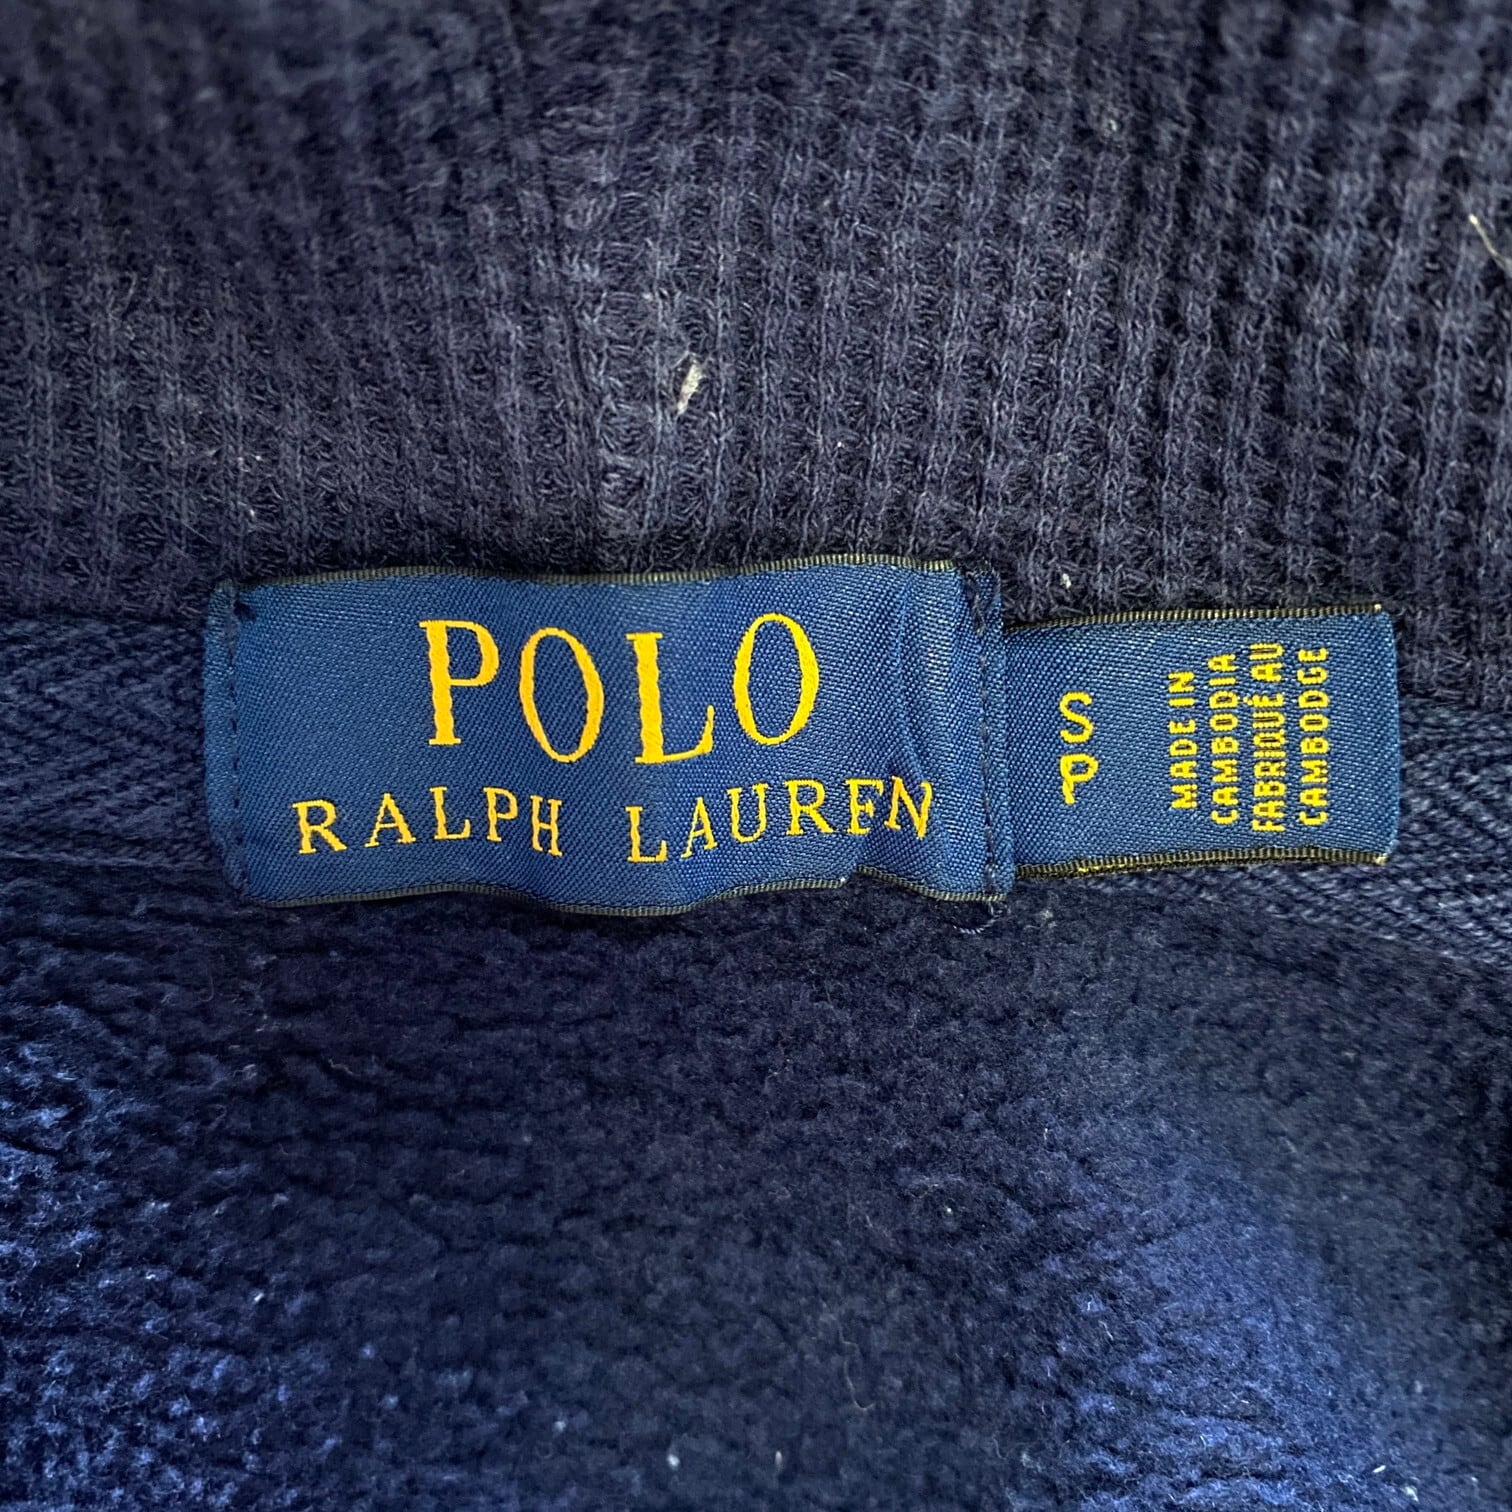 Polo Ralph Lauren ポロ ラルフローレン フルジップ スウェット